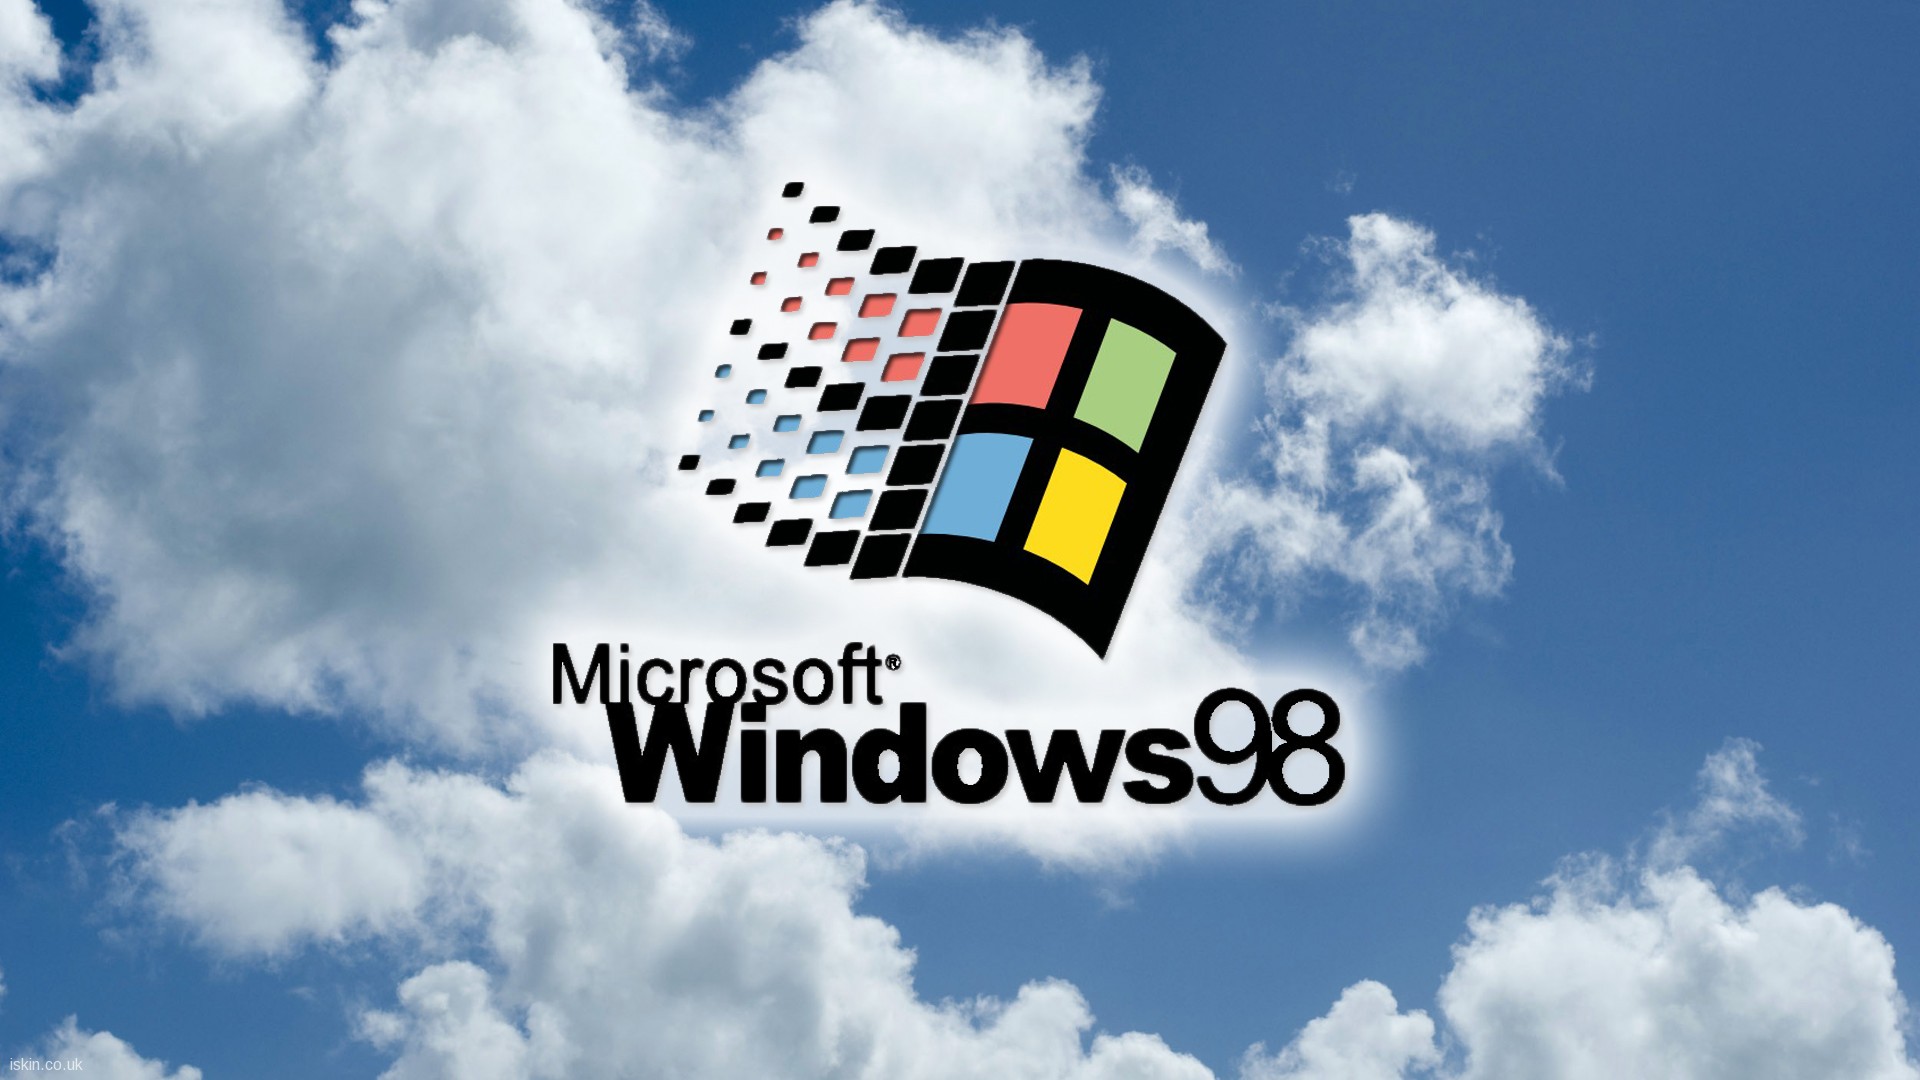 Windows 98 Desktop Wallpaper - WallpaperSafari